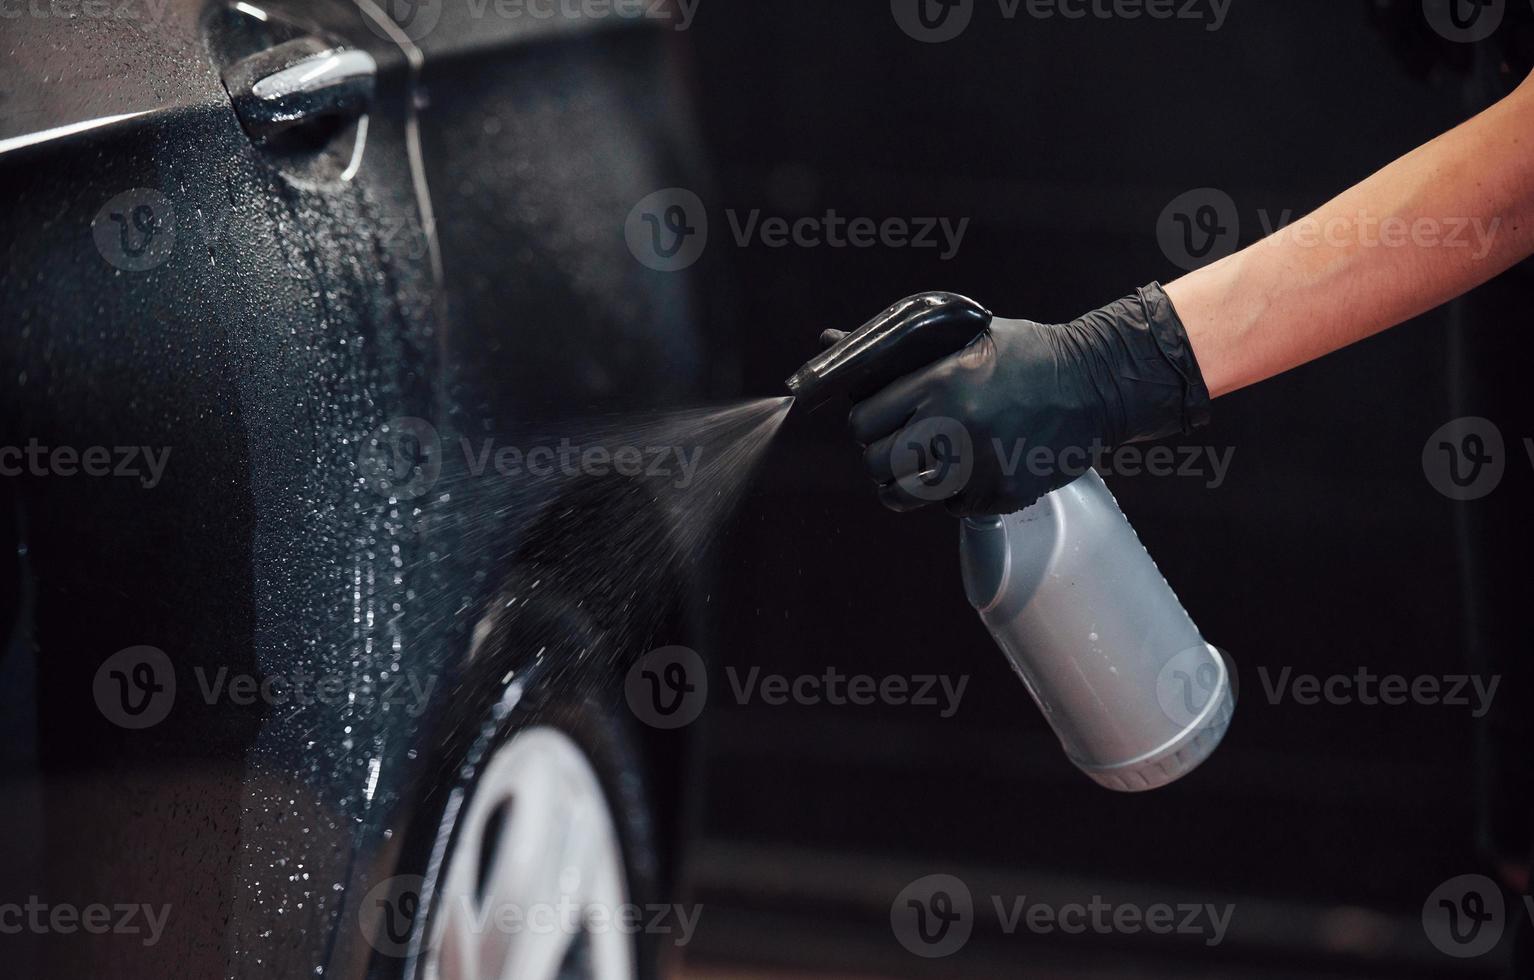 rociando el vehículo. el automóvil negro moderno es limpiado por una mujer dentro de la estación de lavado de autos foto